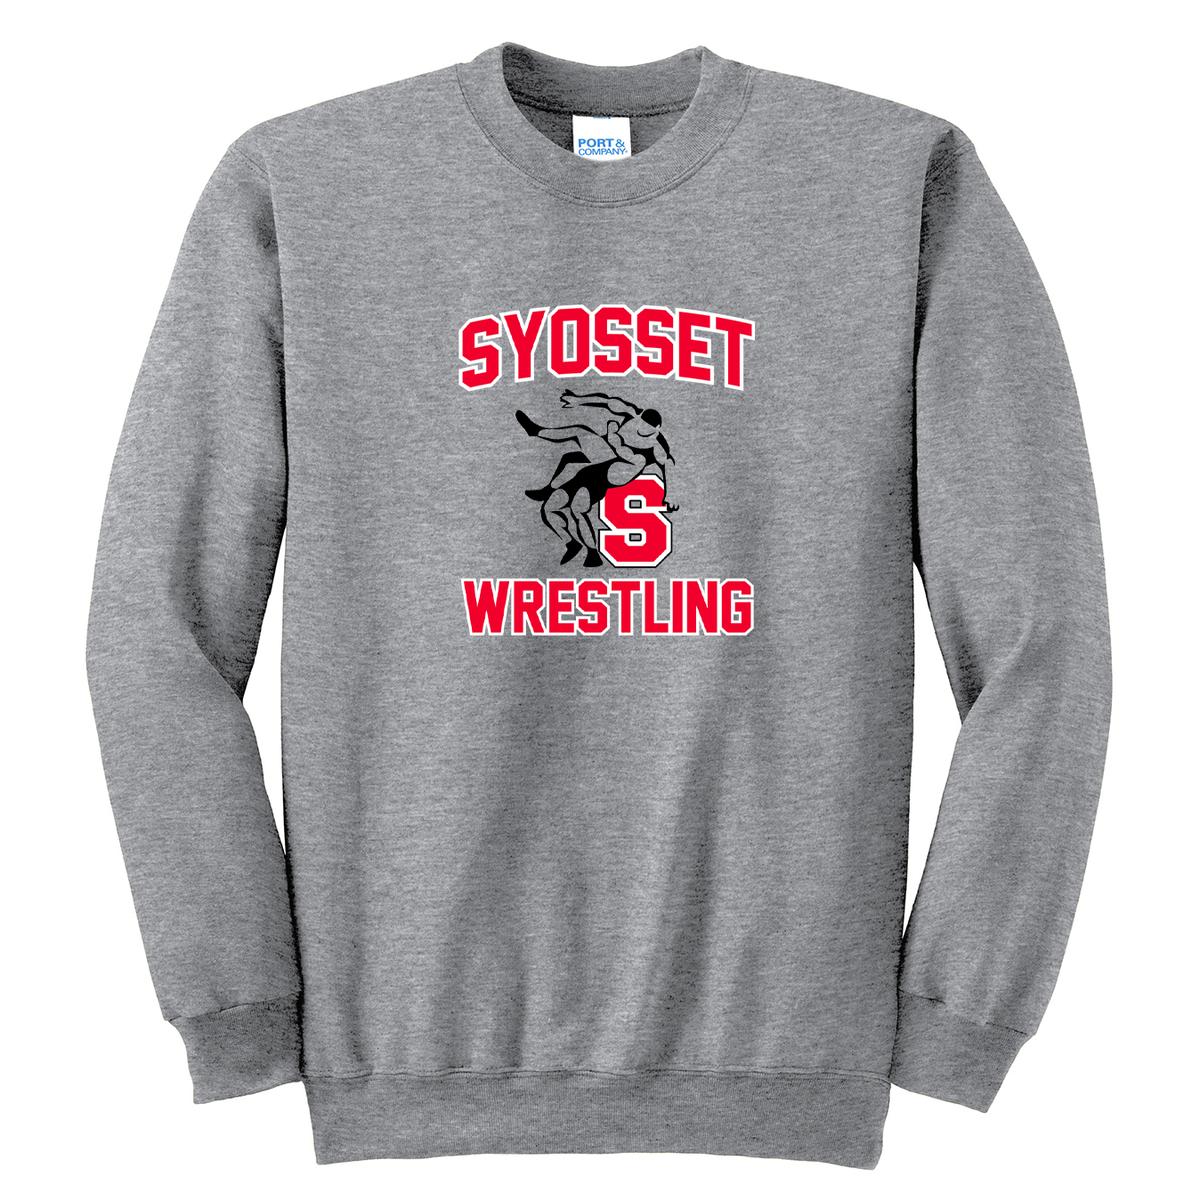 Syosset Wrestling Crew Neck Sweater